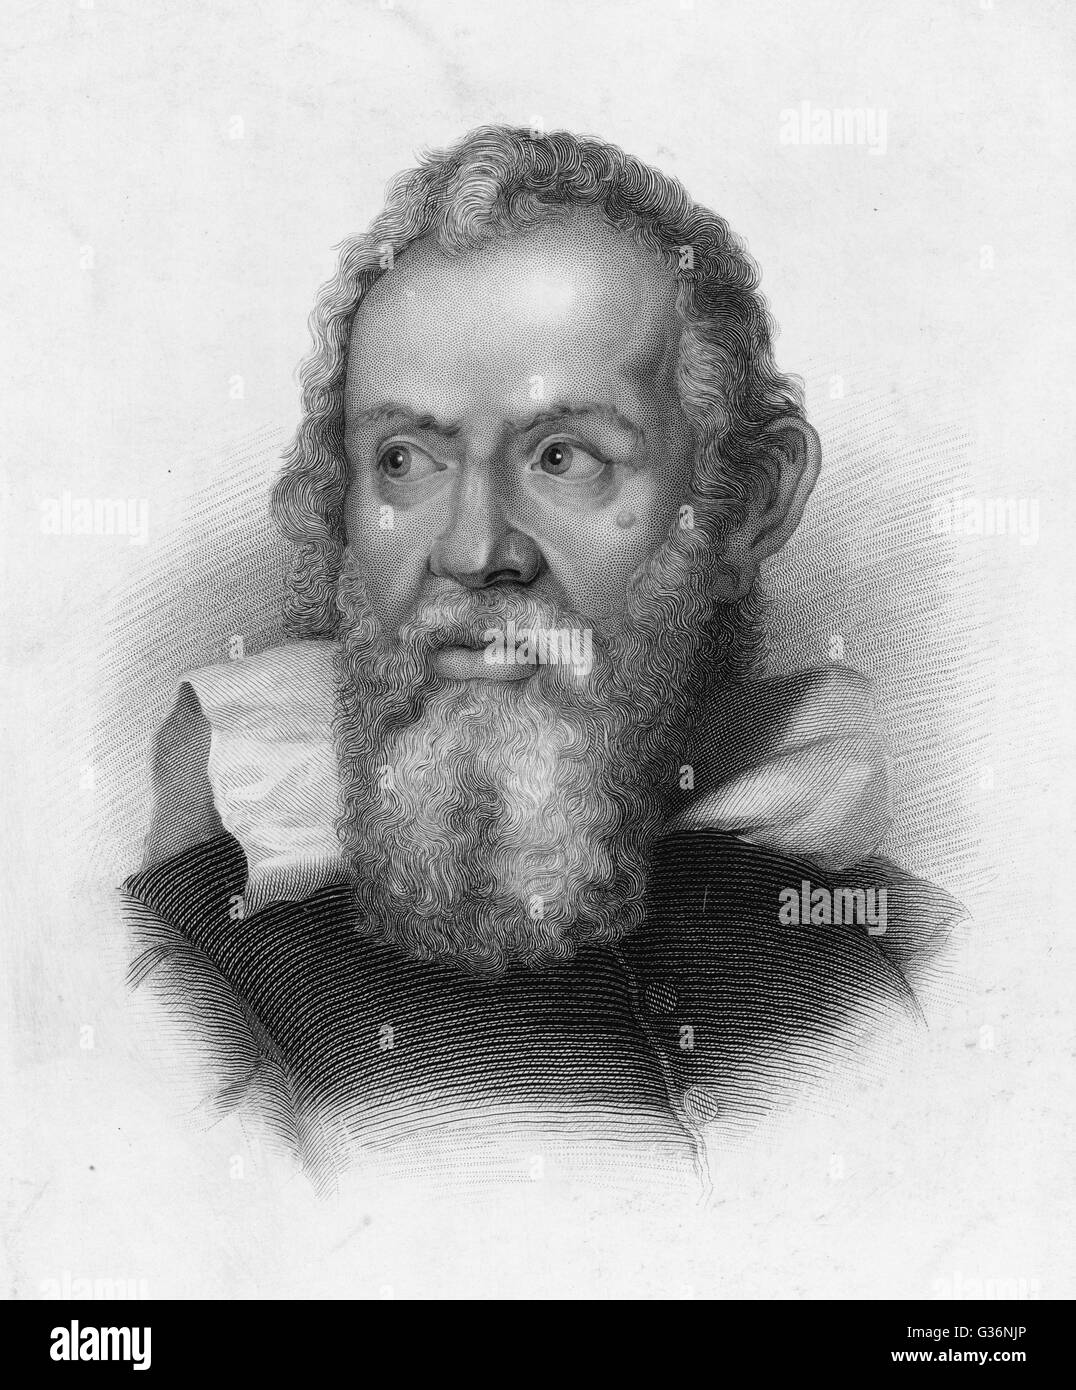 Galileo Galilei, italienischer Astronom Stockfoto